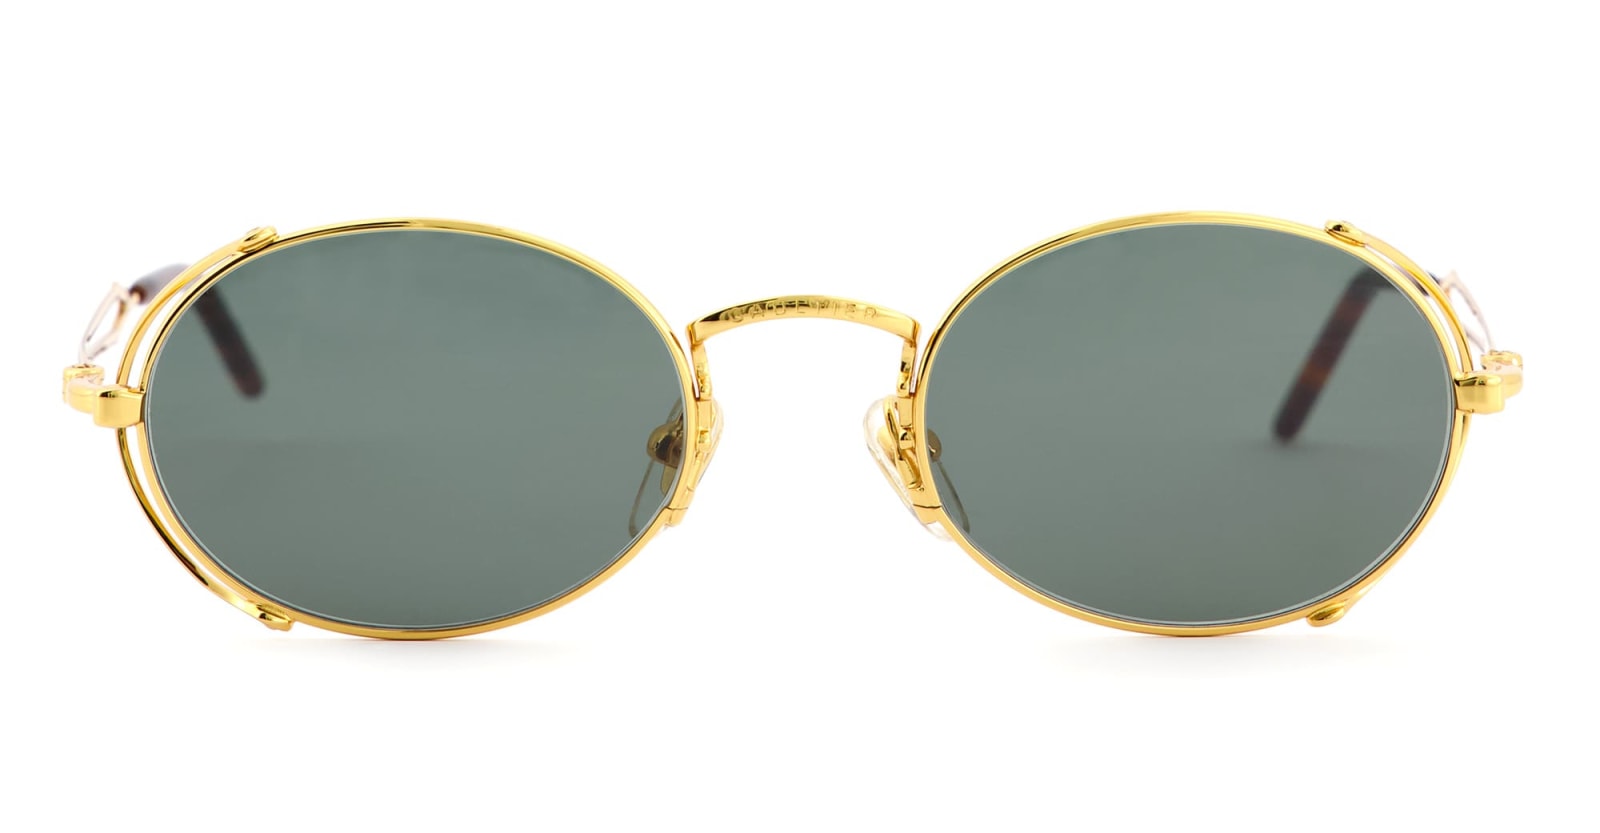 Jean Paul Gaultier 55-3175 - Arceau / Gold Sunglasses In Green